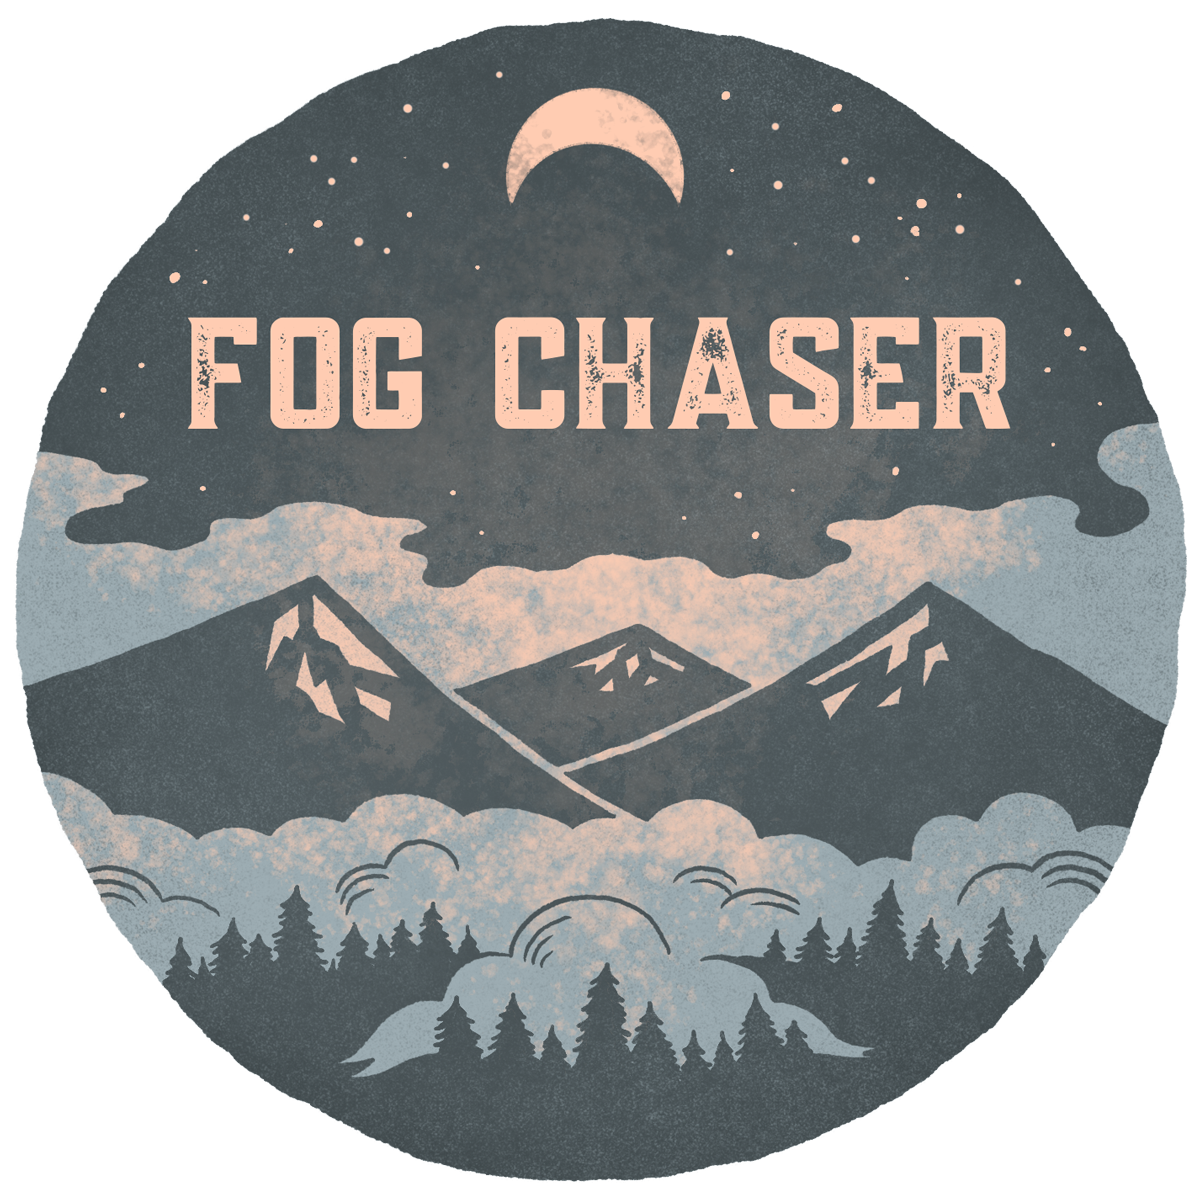 Artwork for Fog Chaser